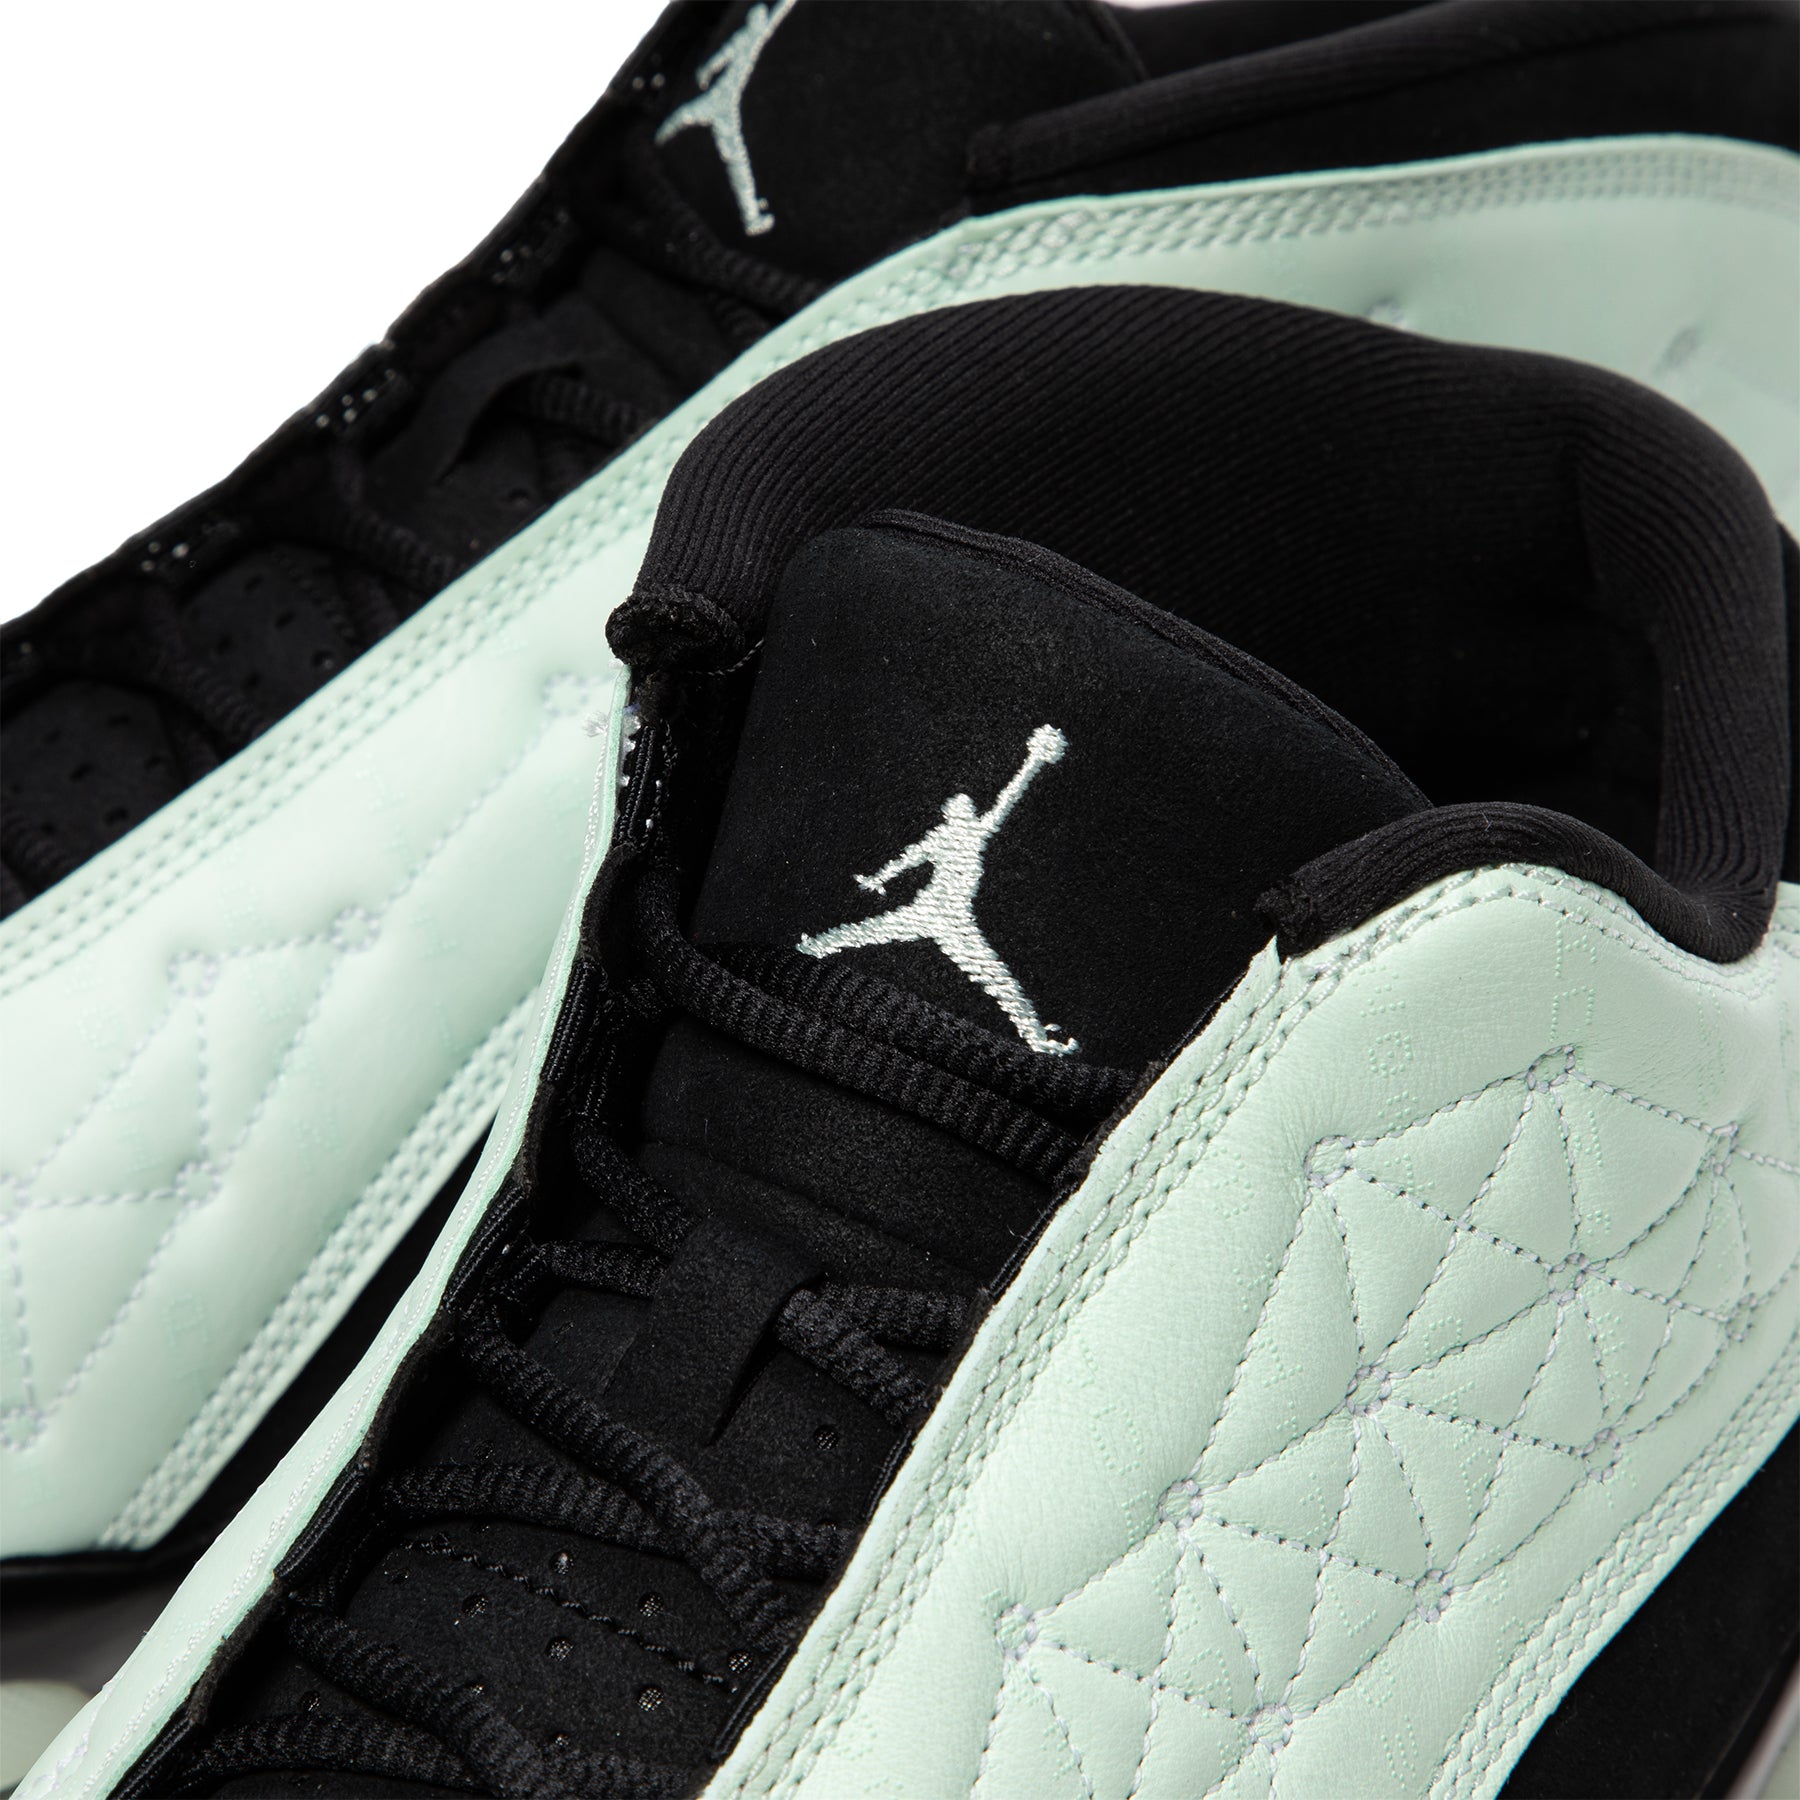 Air Jordan 13 Low Barely Green Black Release Date